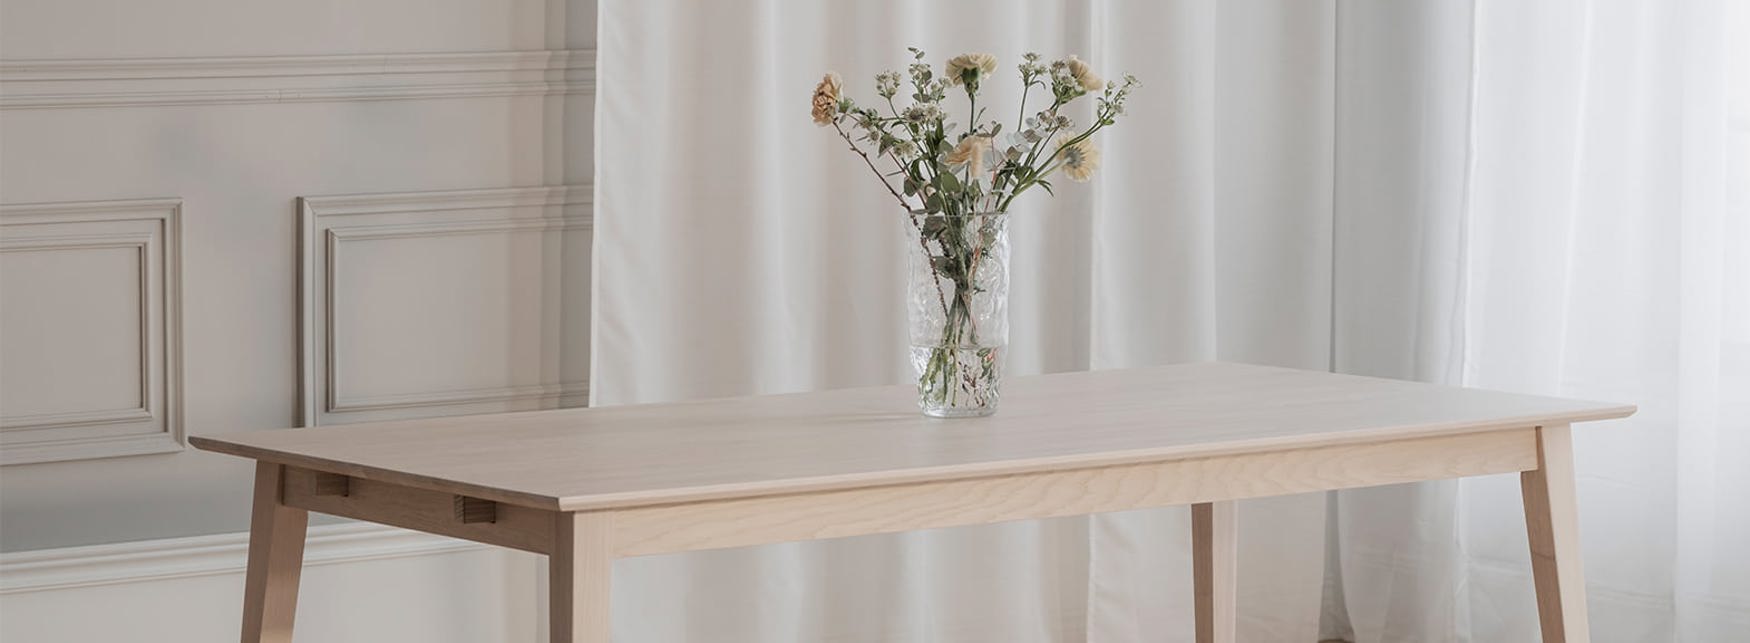 Filippa matbord vitpigmenterat med blommor